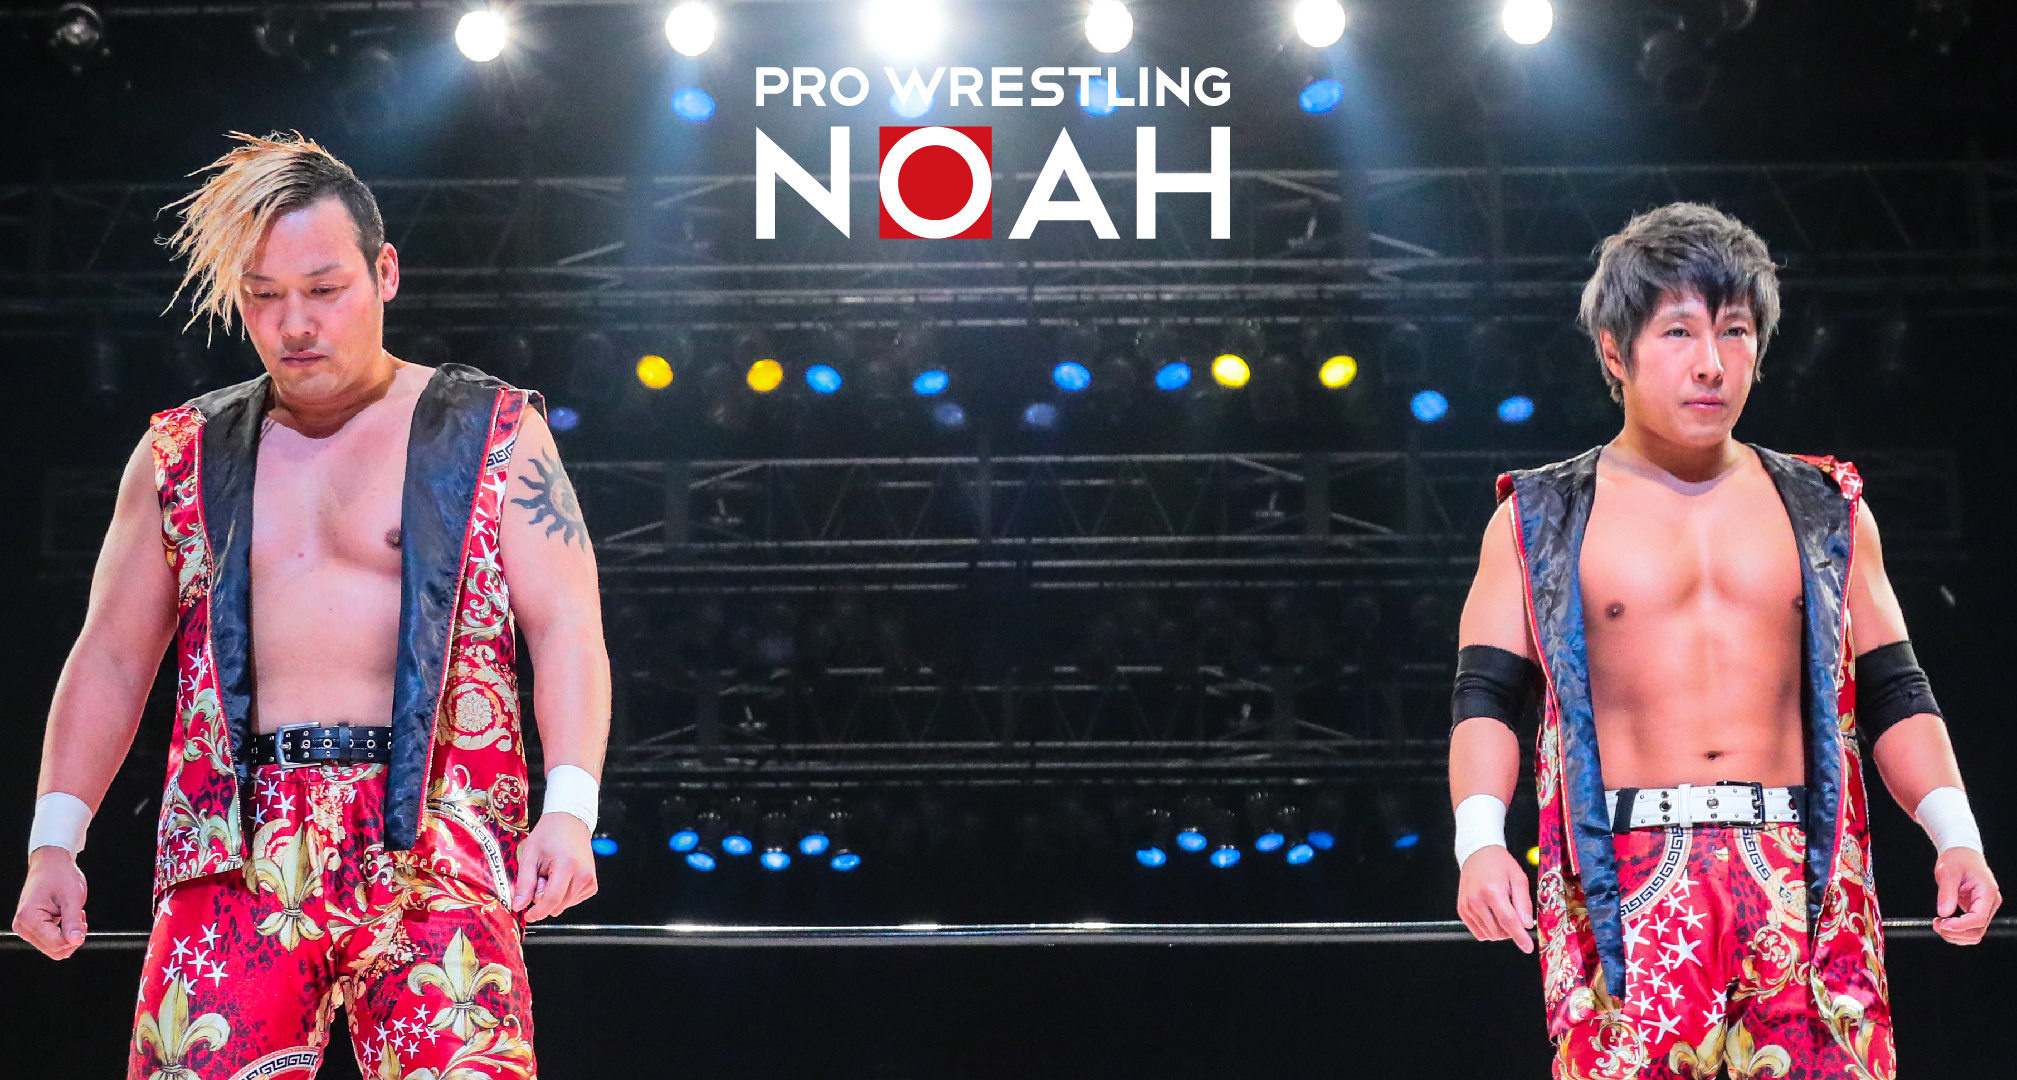 第2弾 オンライン会議などで使用できるnoahオリジナル背景を無料配布 皆さまぜひお使いください プロレスリング ノア公式サイト Pro Wrestling Noah Official Site